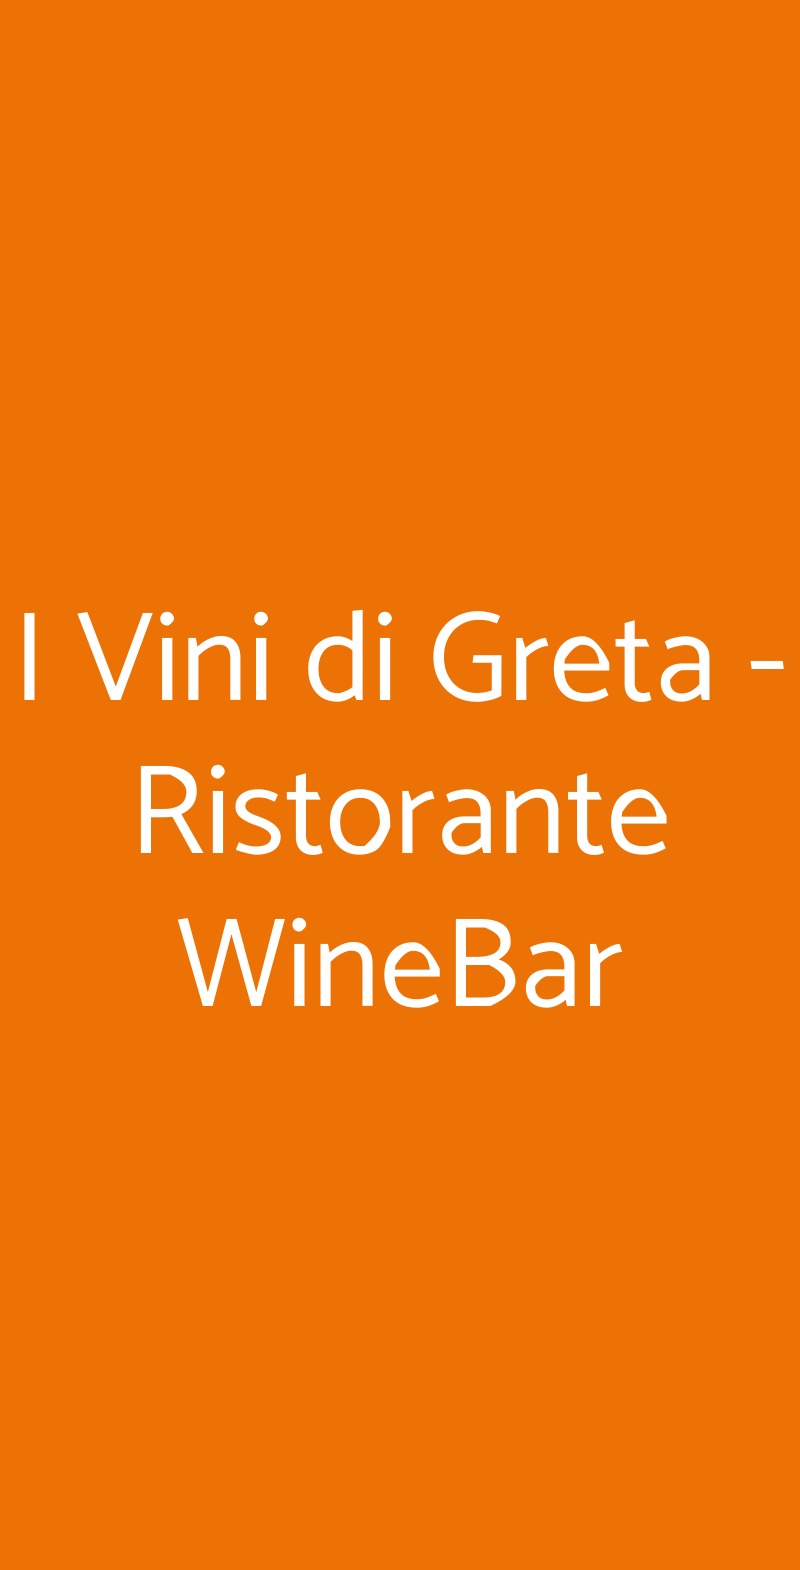 I Vini di Greta - Ristorante WineBar Cosenza menù 1 pagina